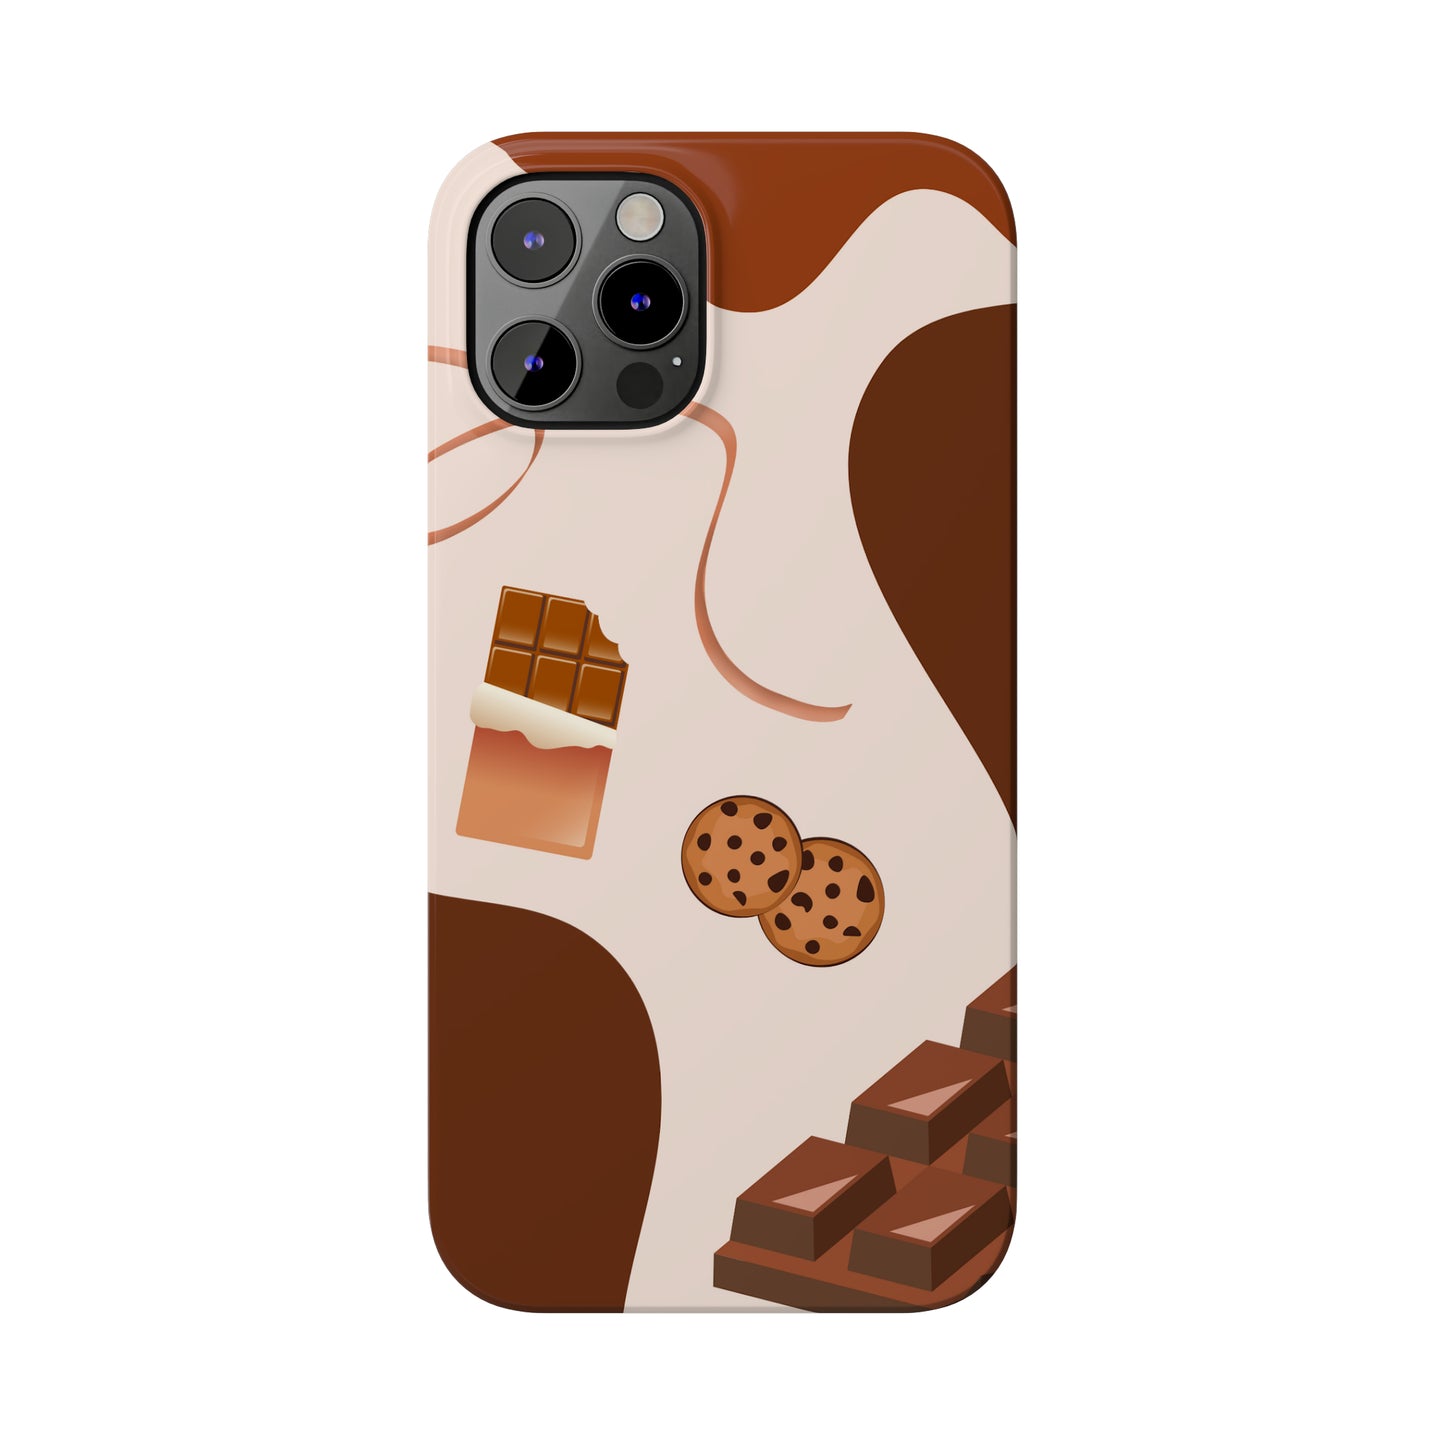 Choco Slim Phone Cases